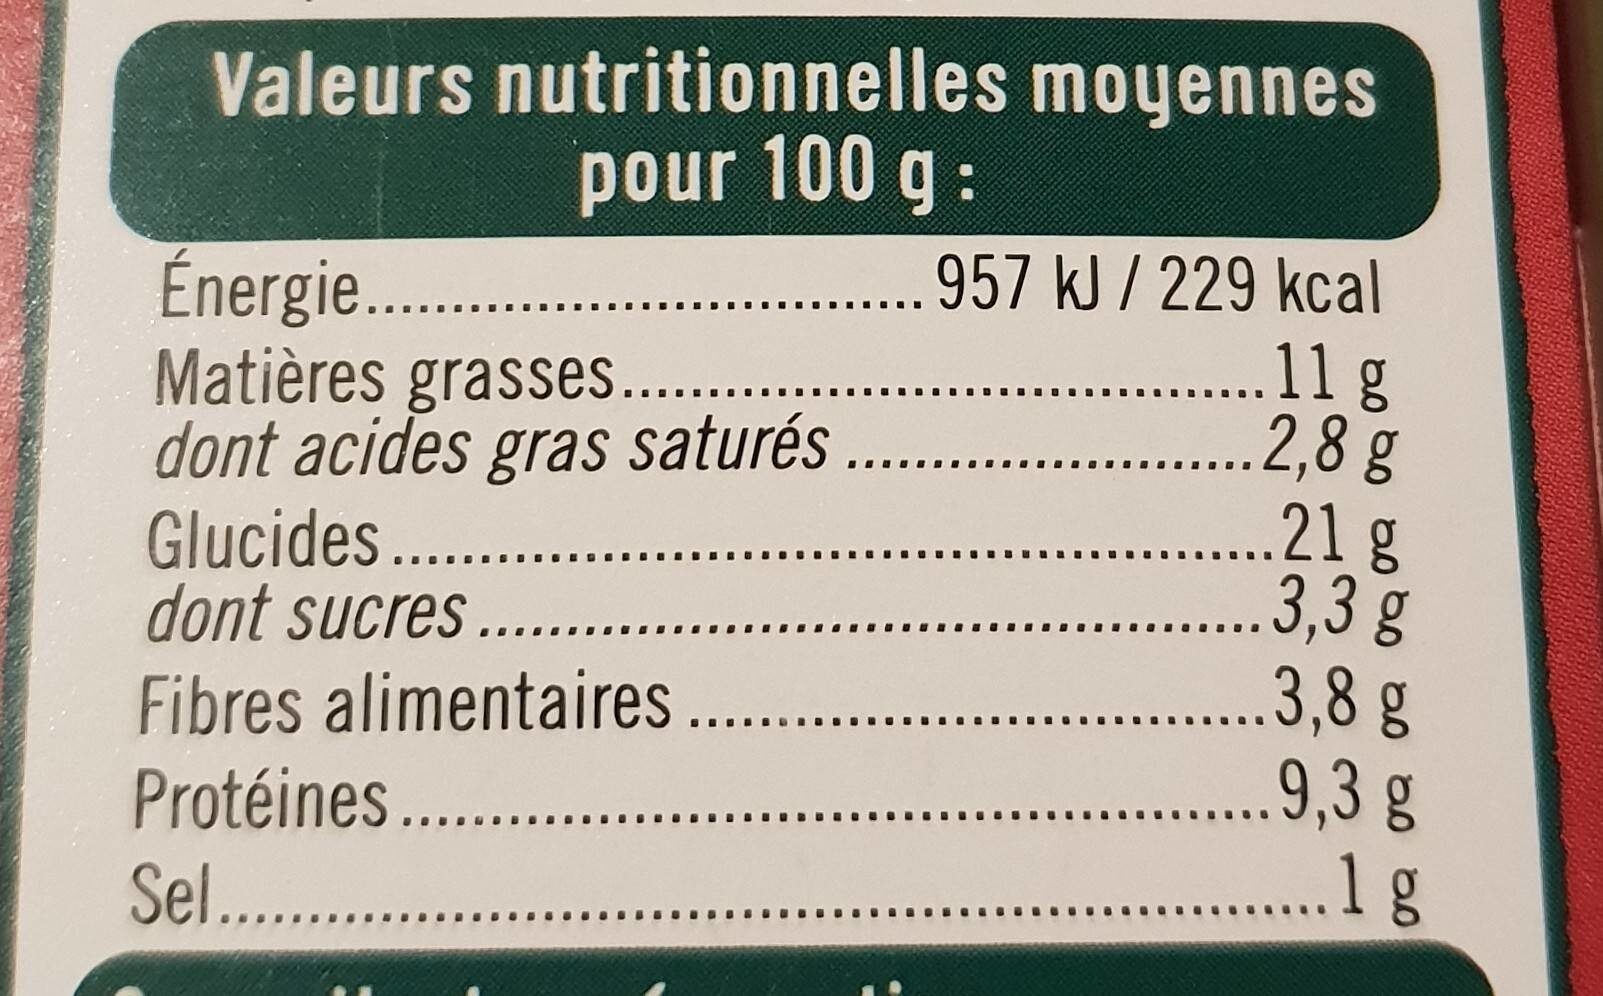 Panés au millet patate douce, aubergine paprika - Nutrition facts - fr